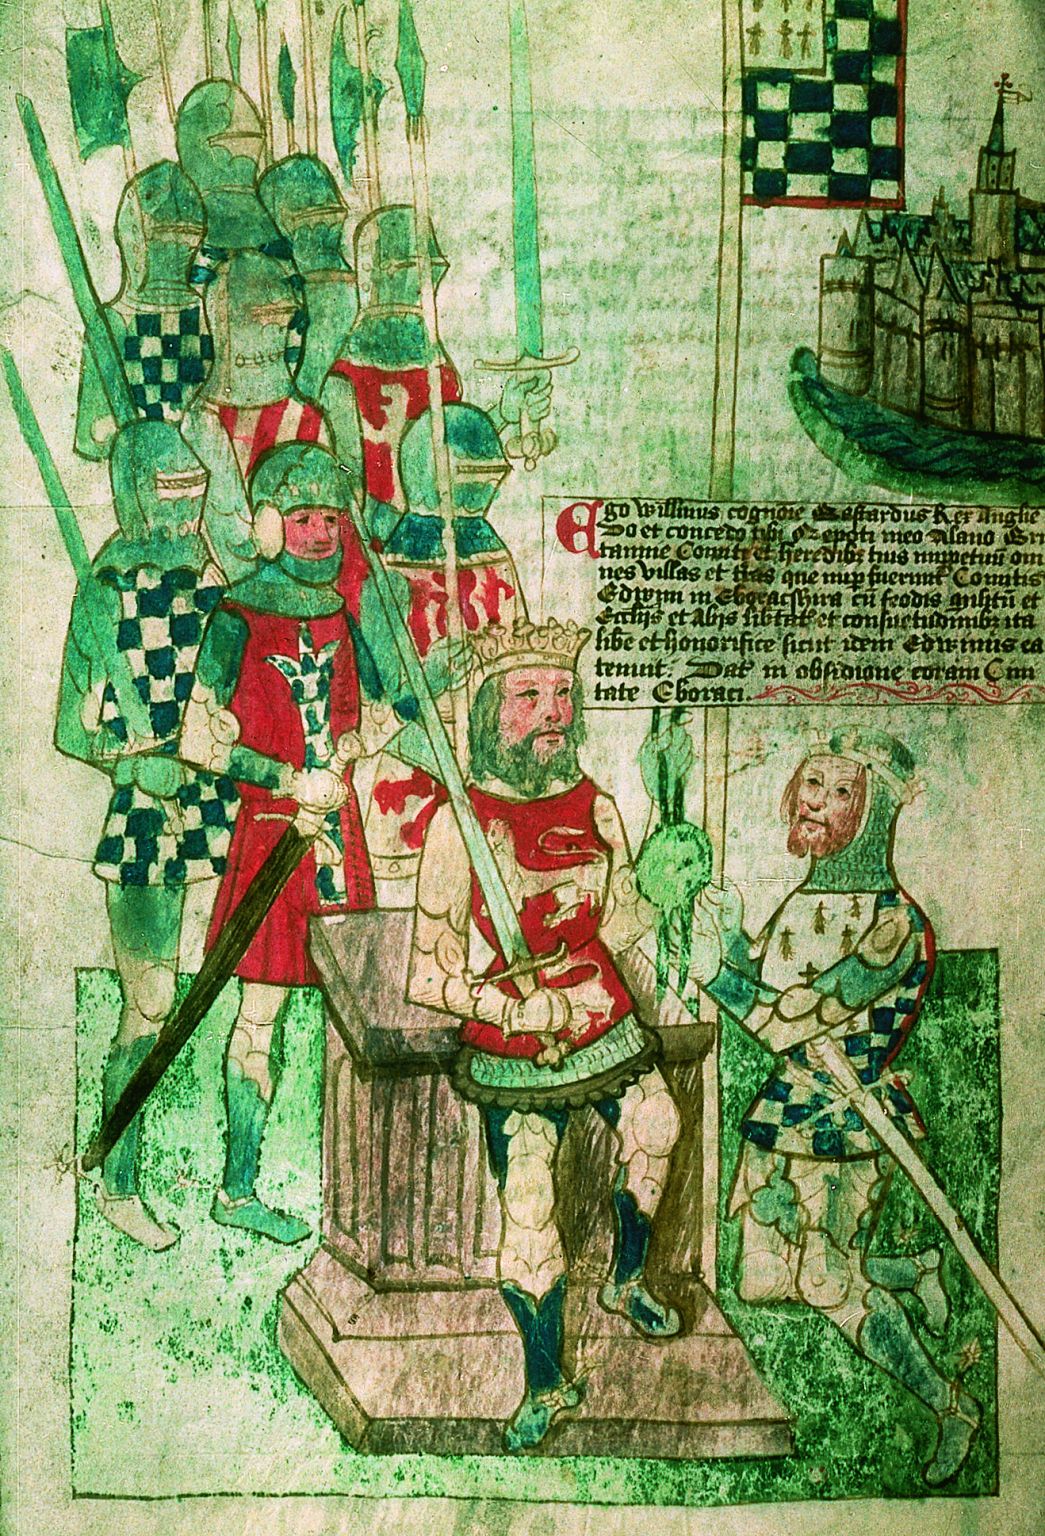 Guillaume le Conquérant investit son neveu Alain le Roux, comte de Bretagne des terres du comté d’Edwin dans le Yorshire.